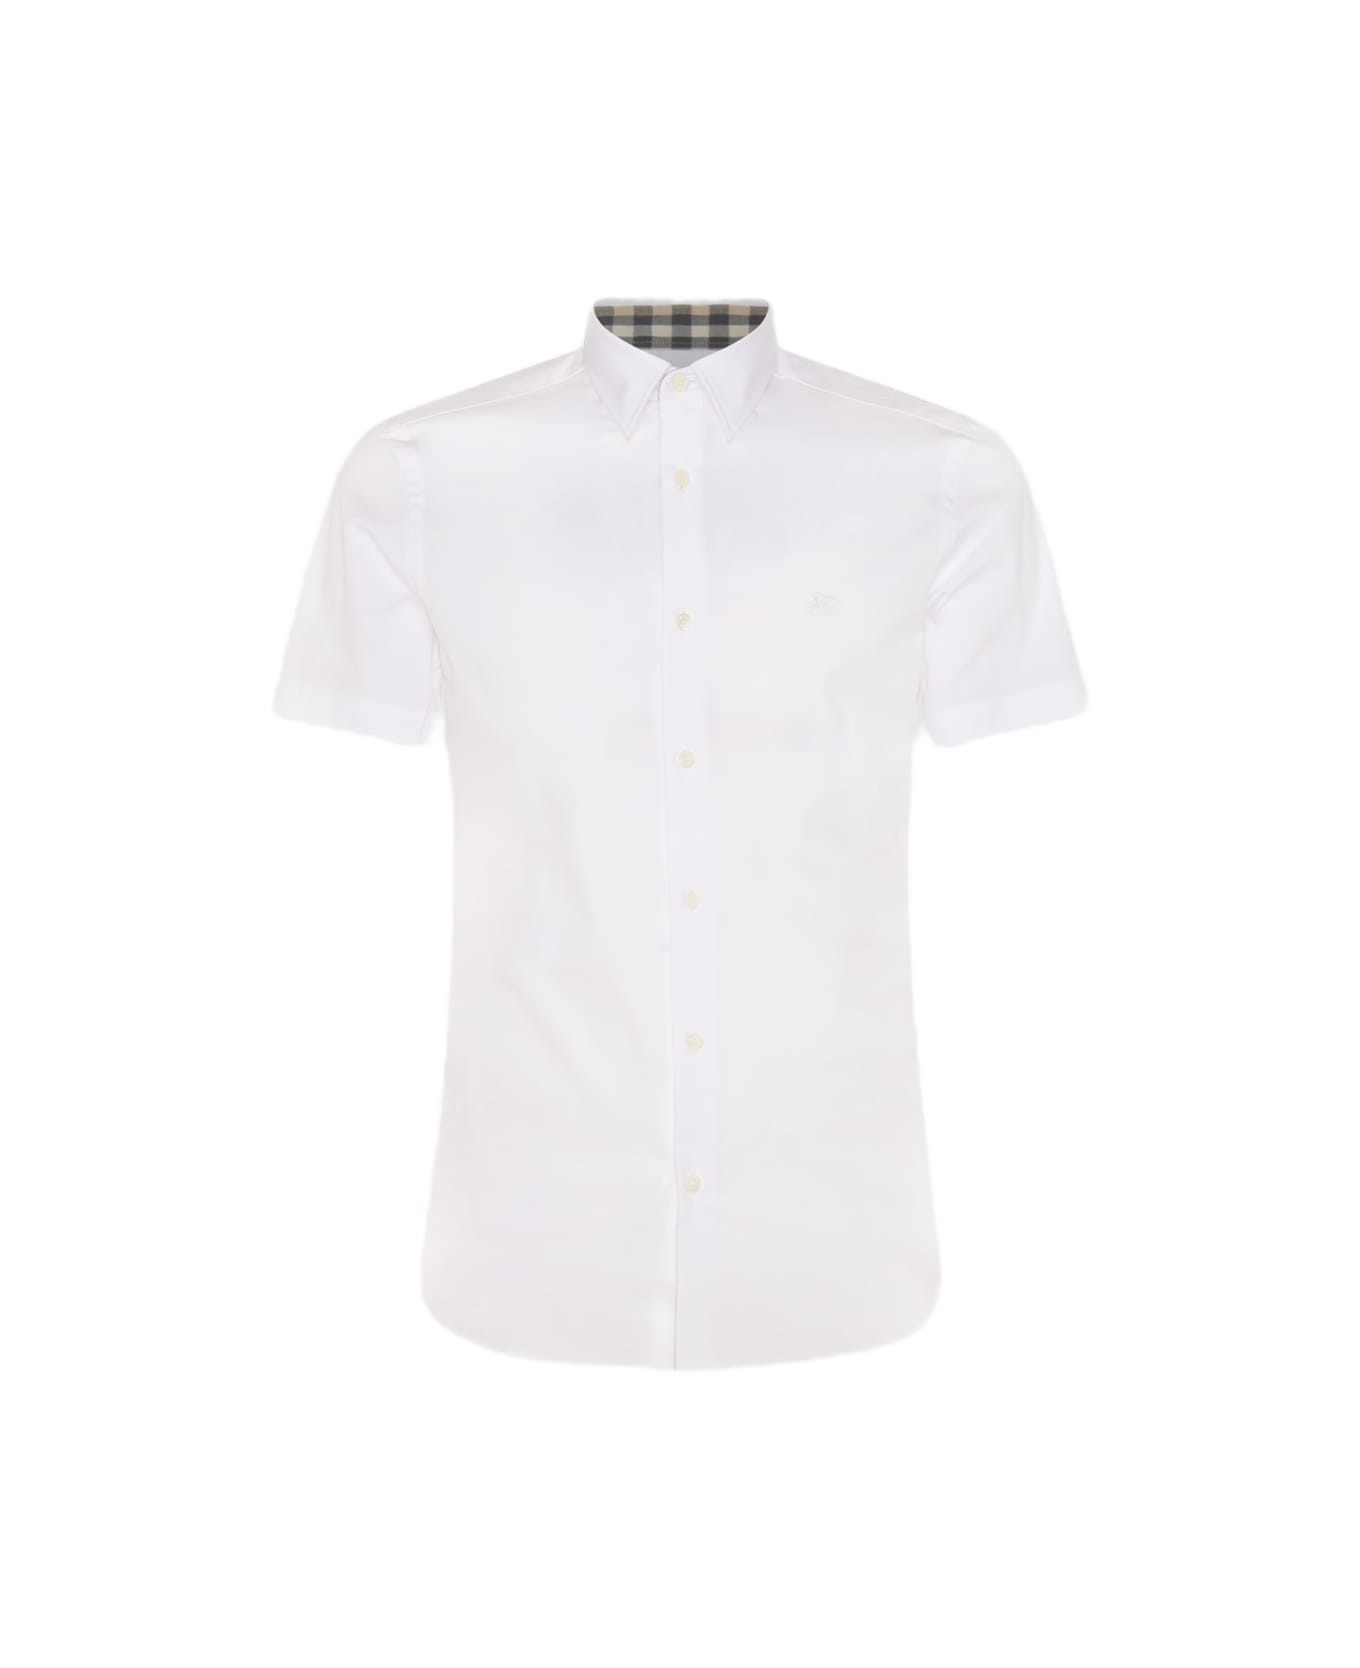 Burberry White Cotton Shirt - White